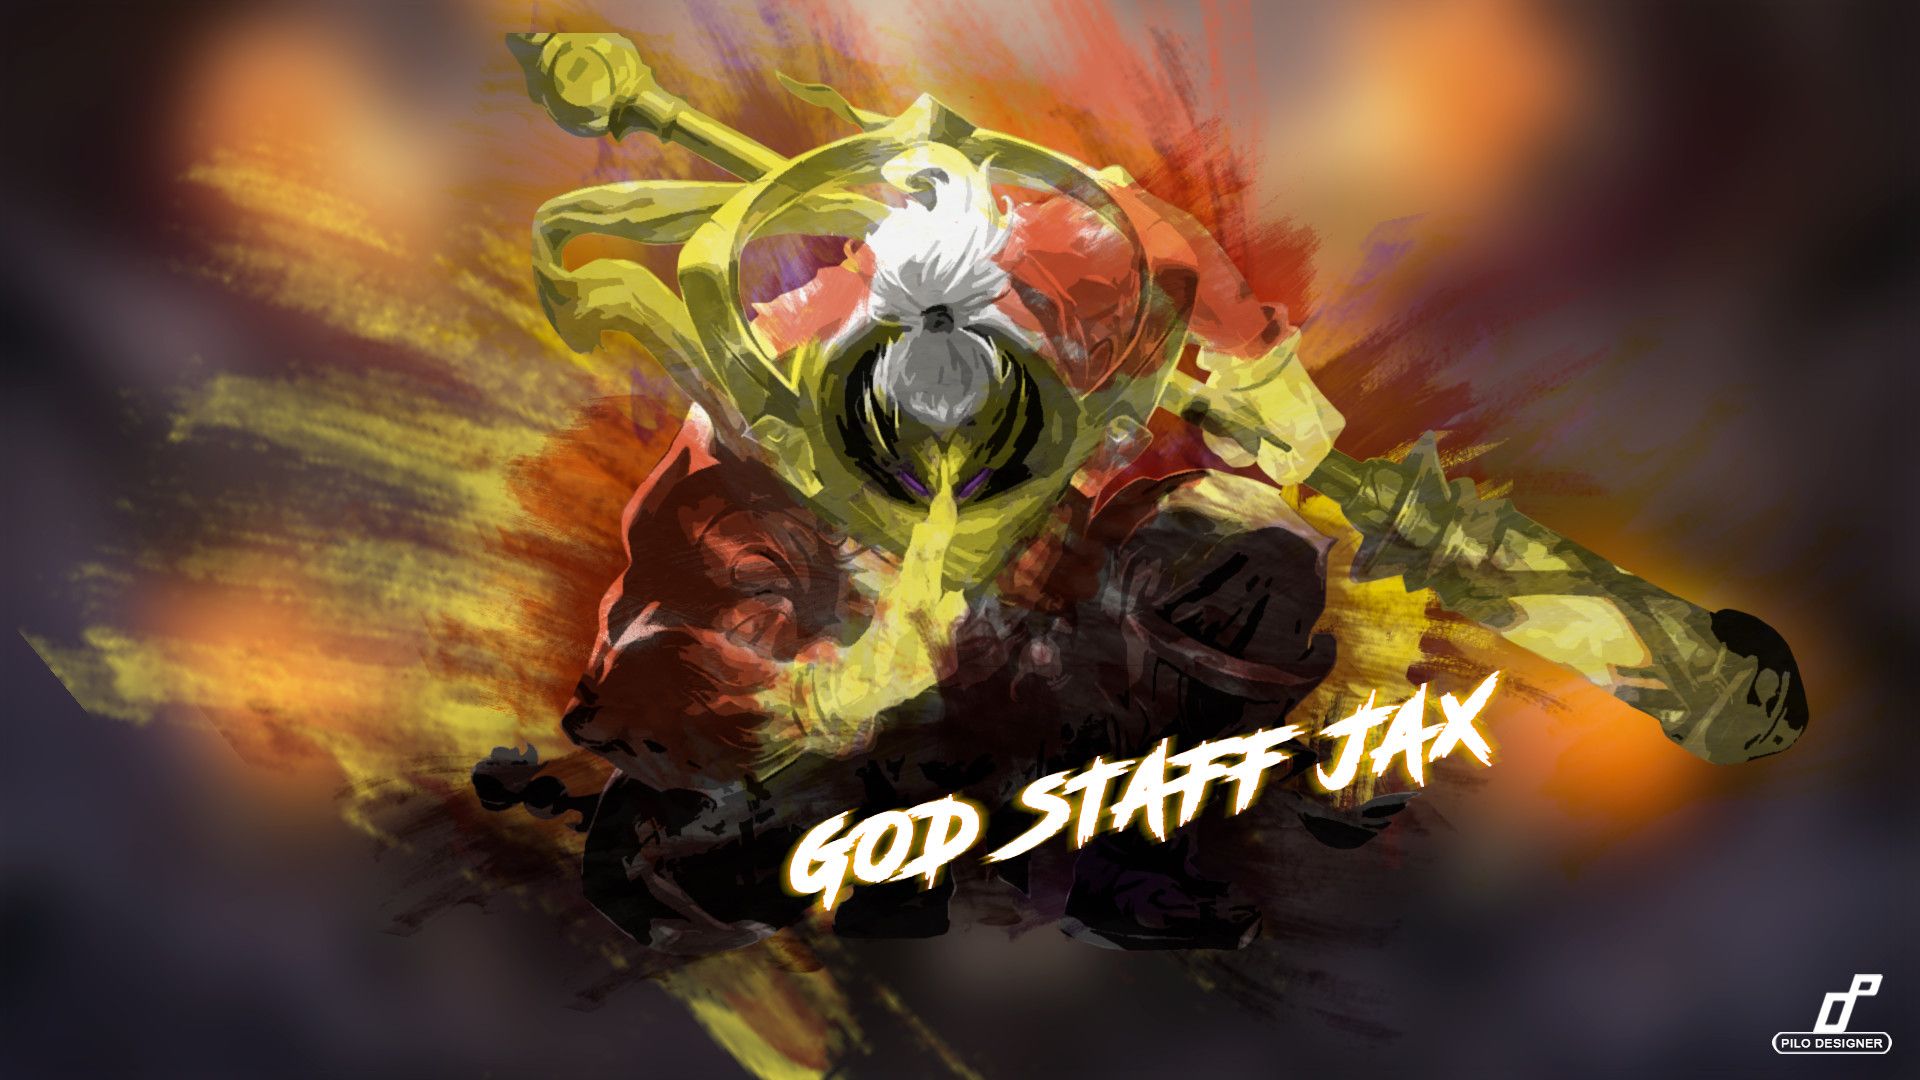 God Staff Jax Wallpapers